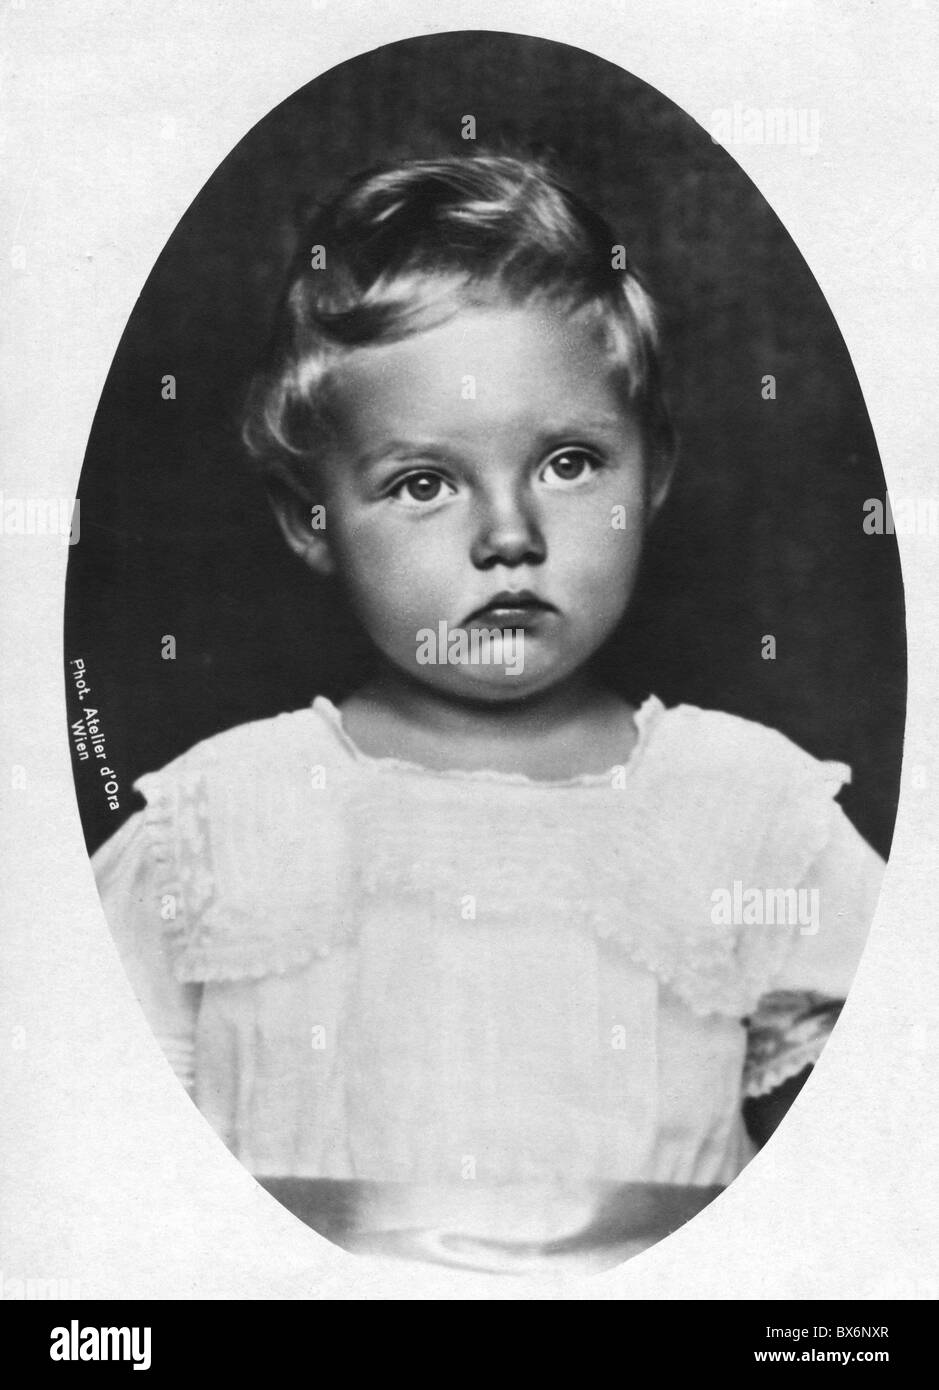 Habsburg, Adelheid von, 3.1.1914 - 2.10.1971, Journalist, als Kind, Postkarte, Atelier d'Ora, Wien, im Jahre 1915, Stockfoto